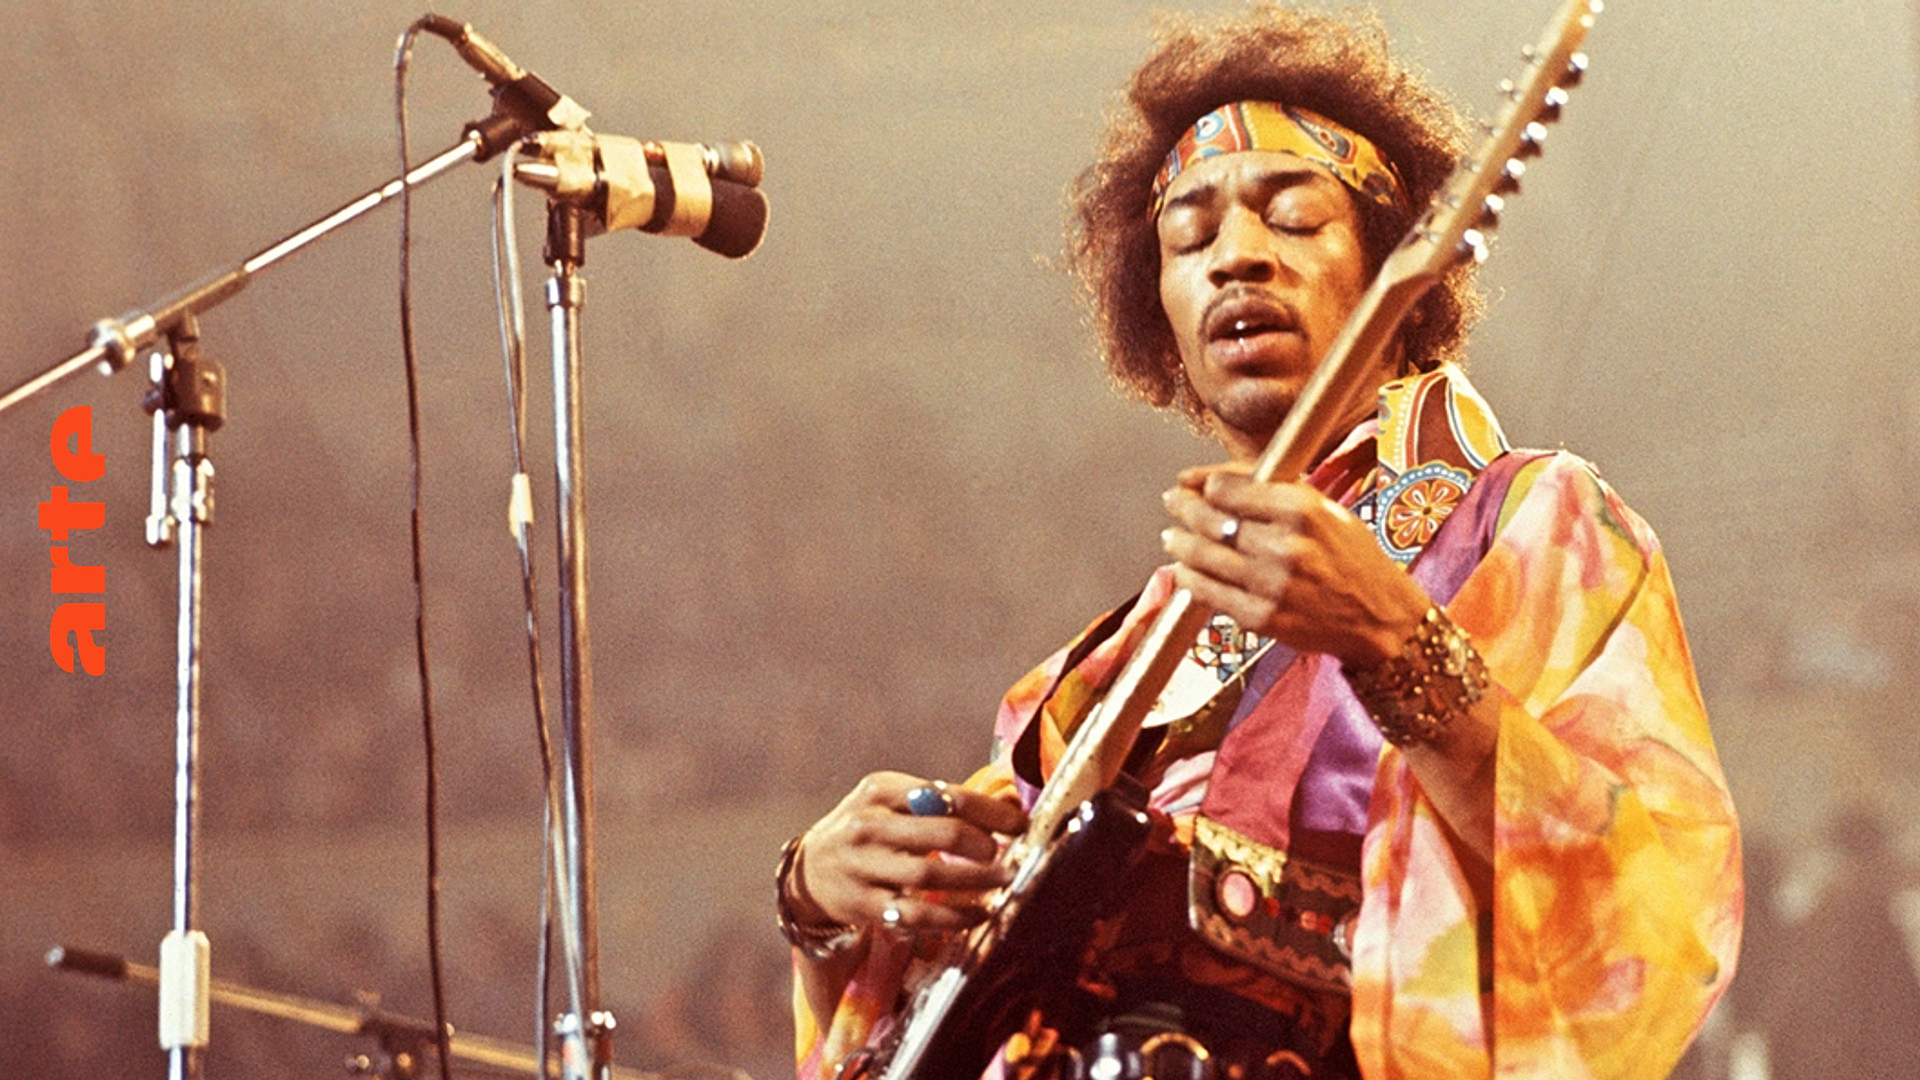 Blow up - Jimi Hendrix im Film